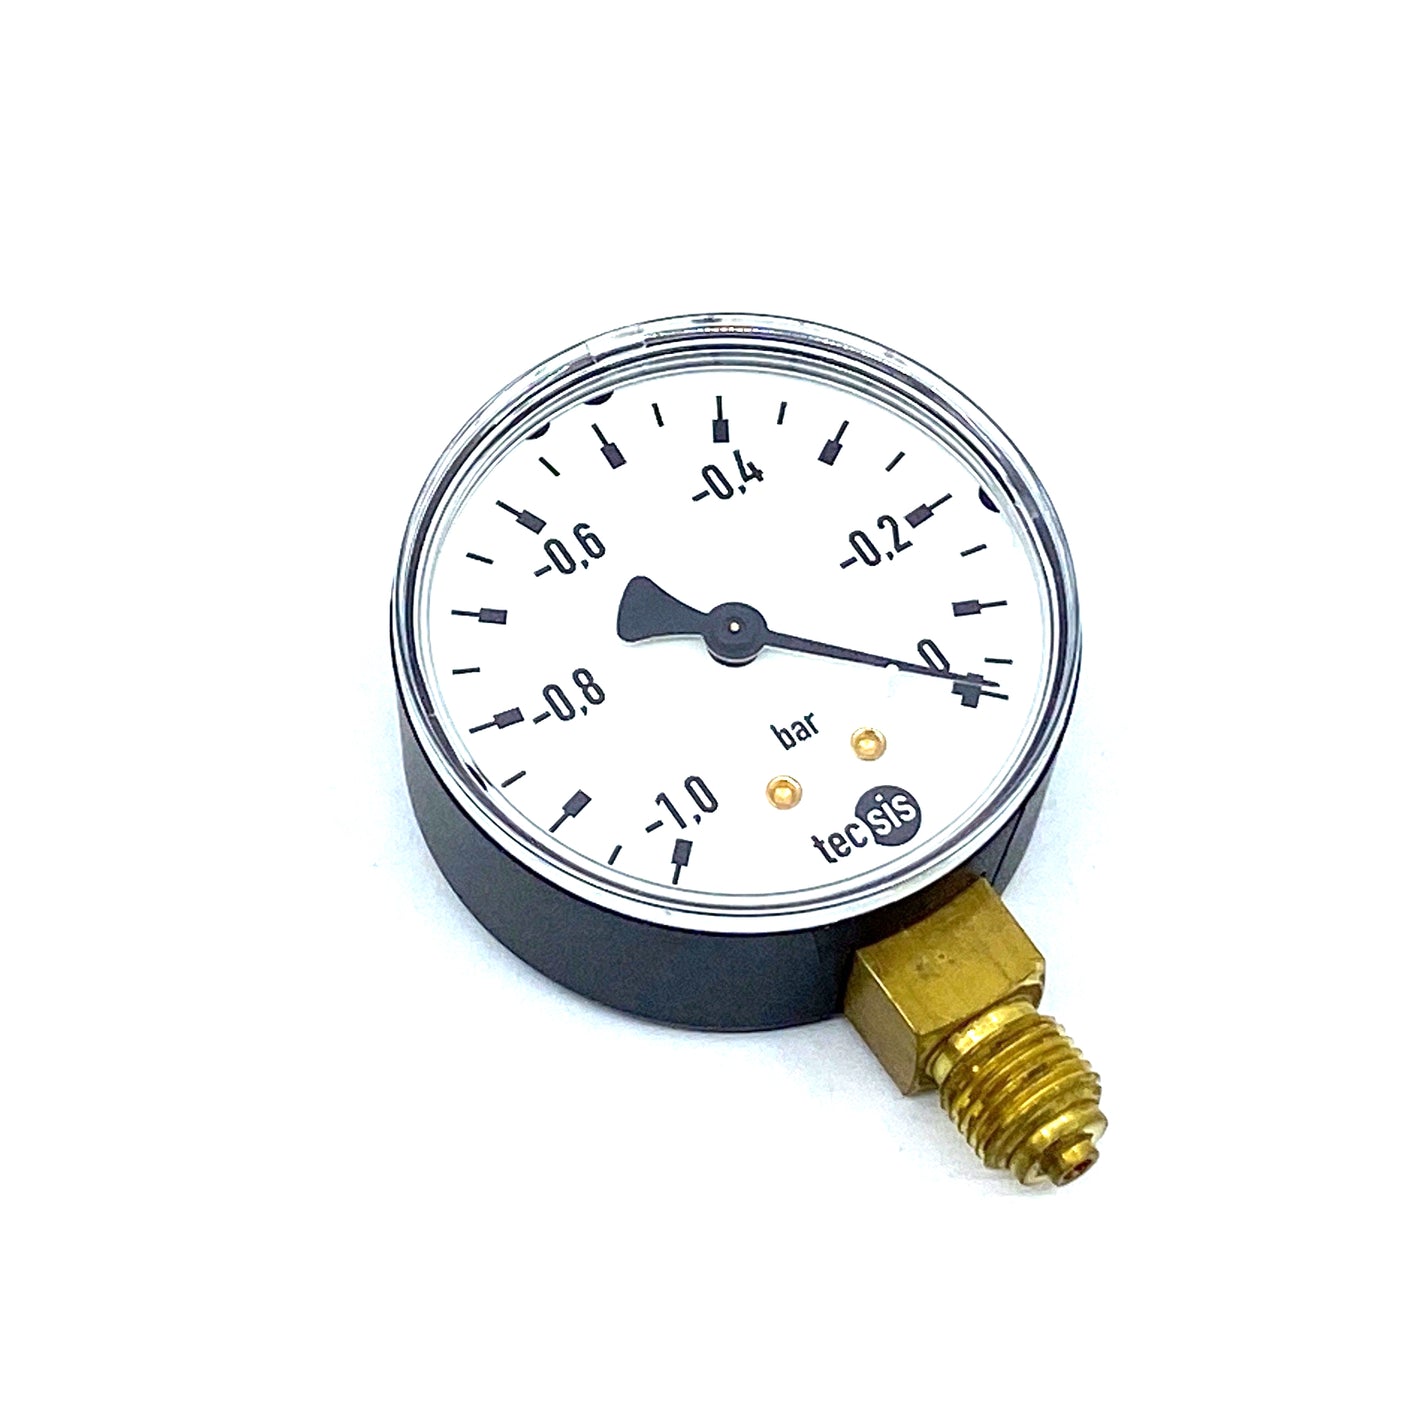 TECSIS 1430.016.001 manometer pressure gauge -1-0bar G1/4B 